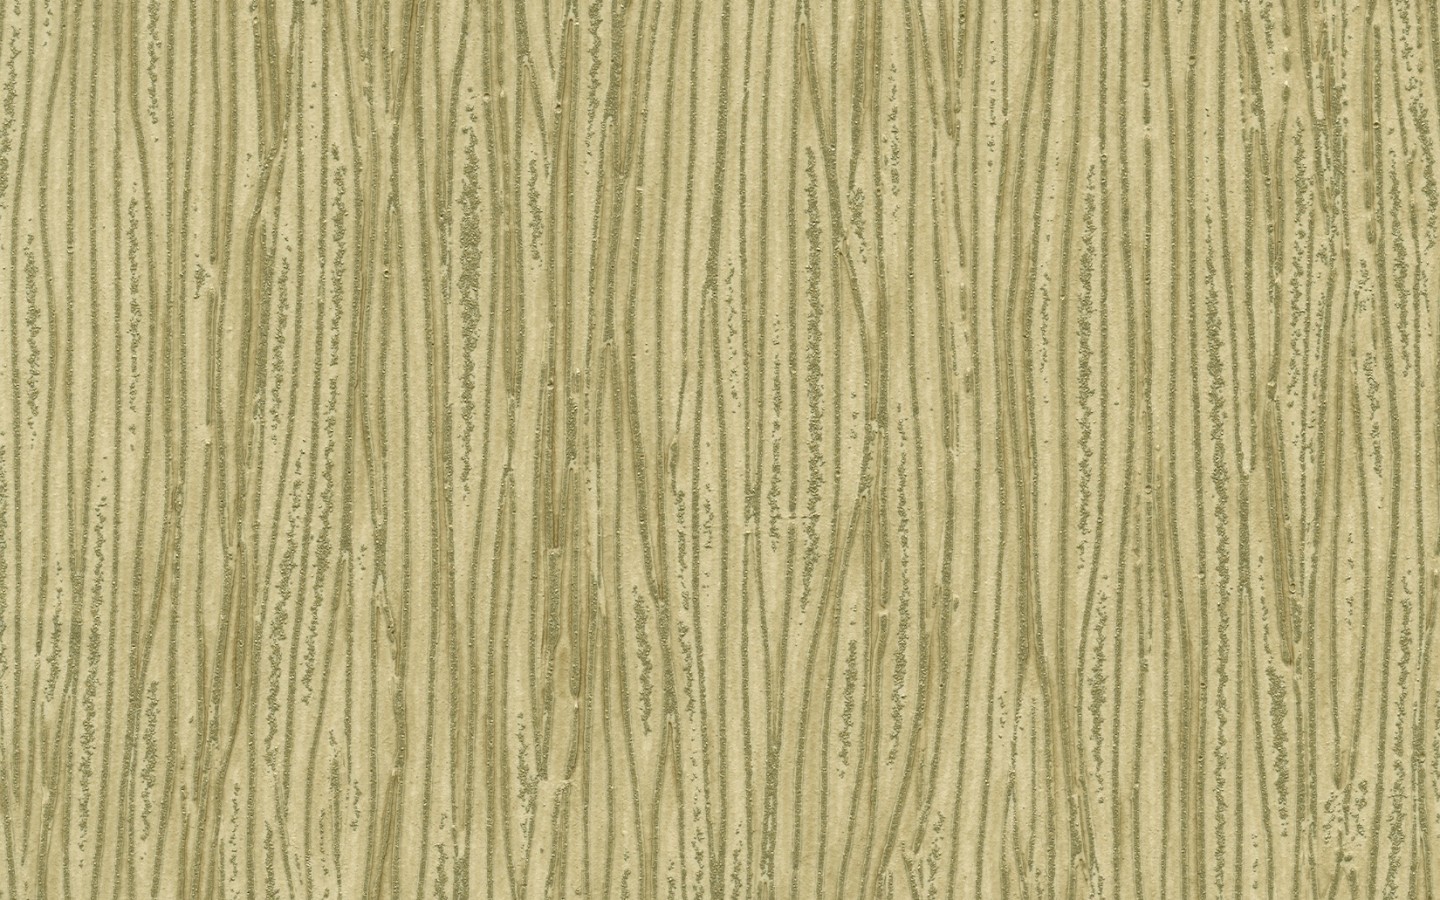 carta da parati seagrass,legna,pavimento in legno,pavimentazione,pavimento,linea